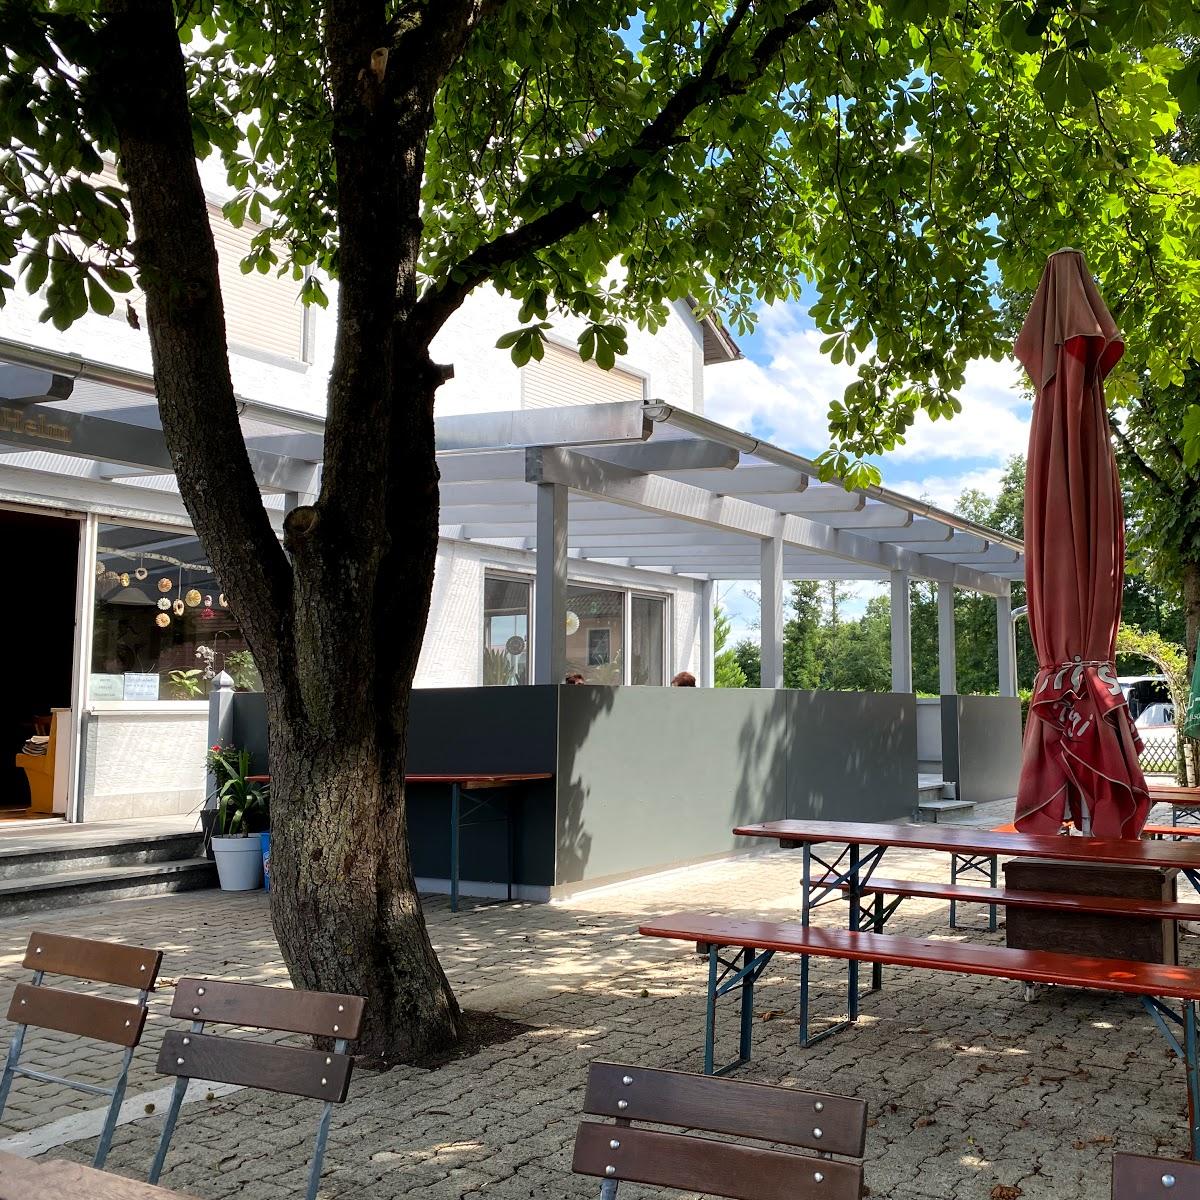 Restaurant "Gasthaus Limmer" in  Hagelstadt